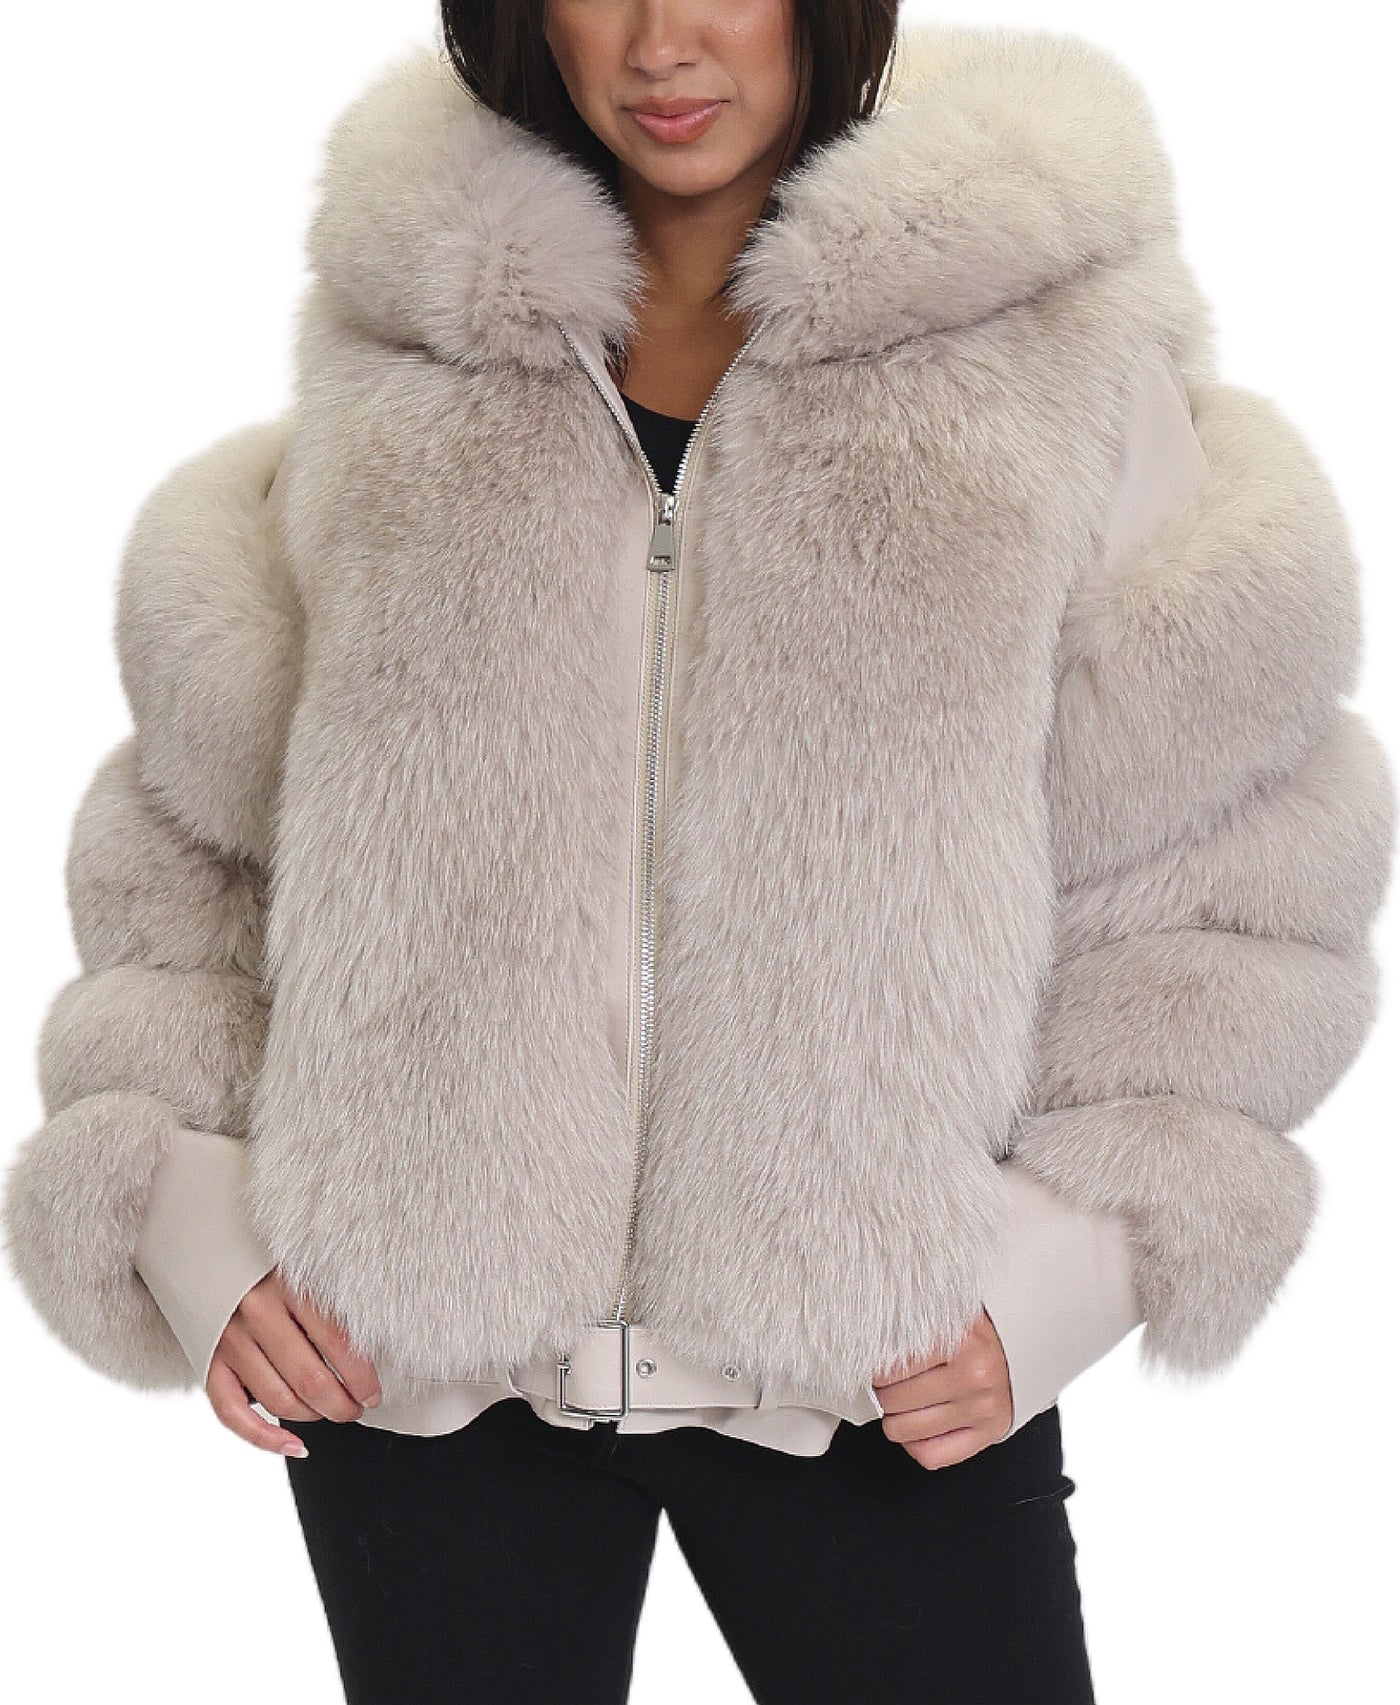 Fur & Leather Jacket w/ Hood image 1